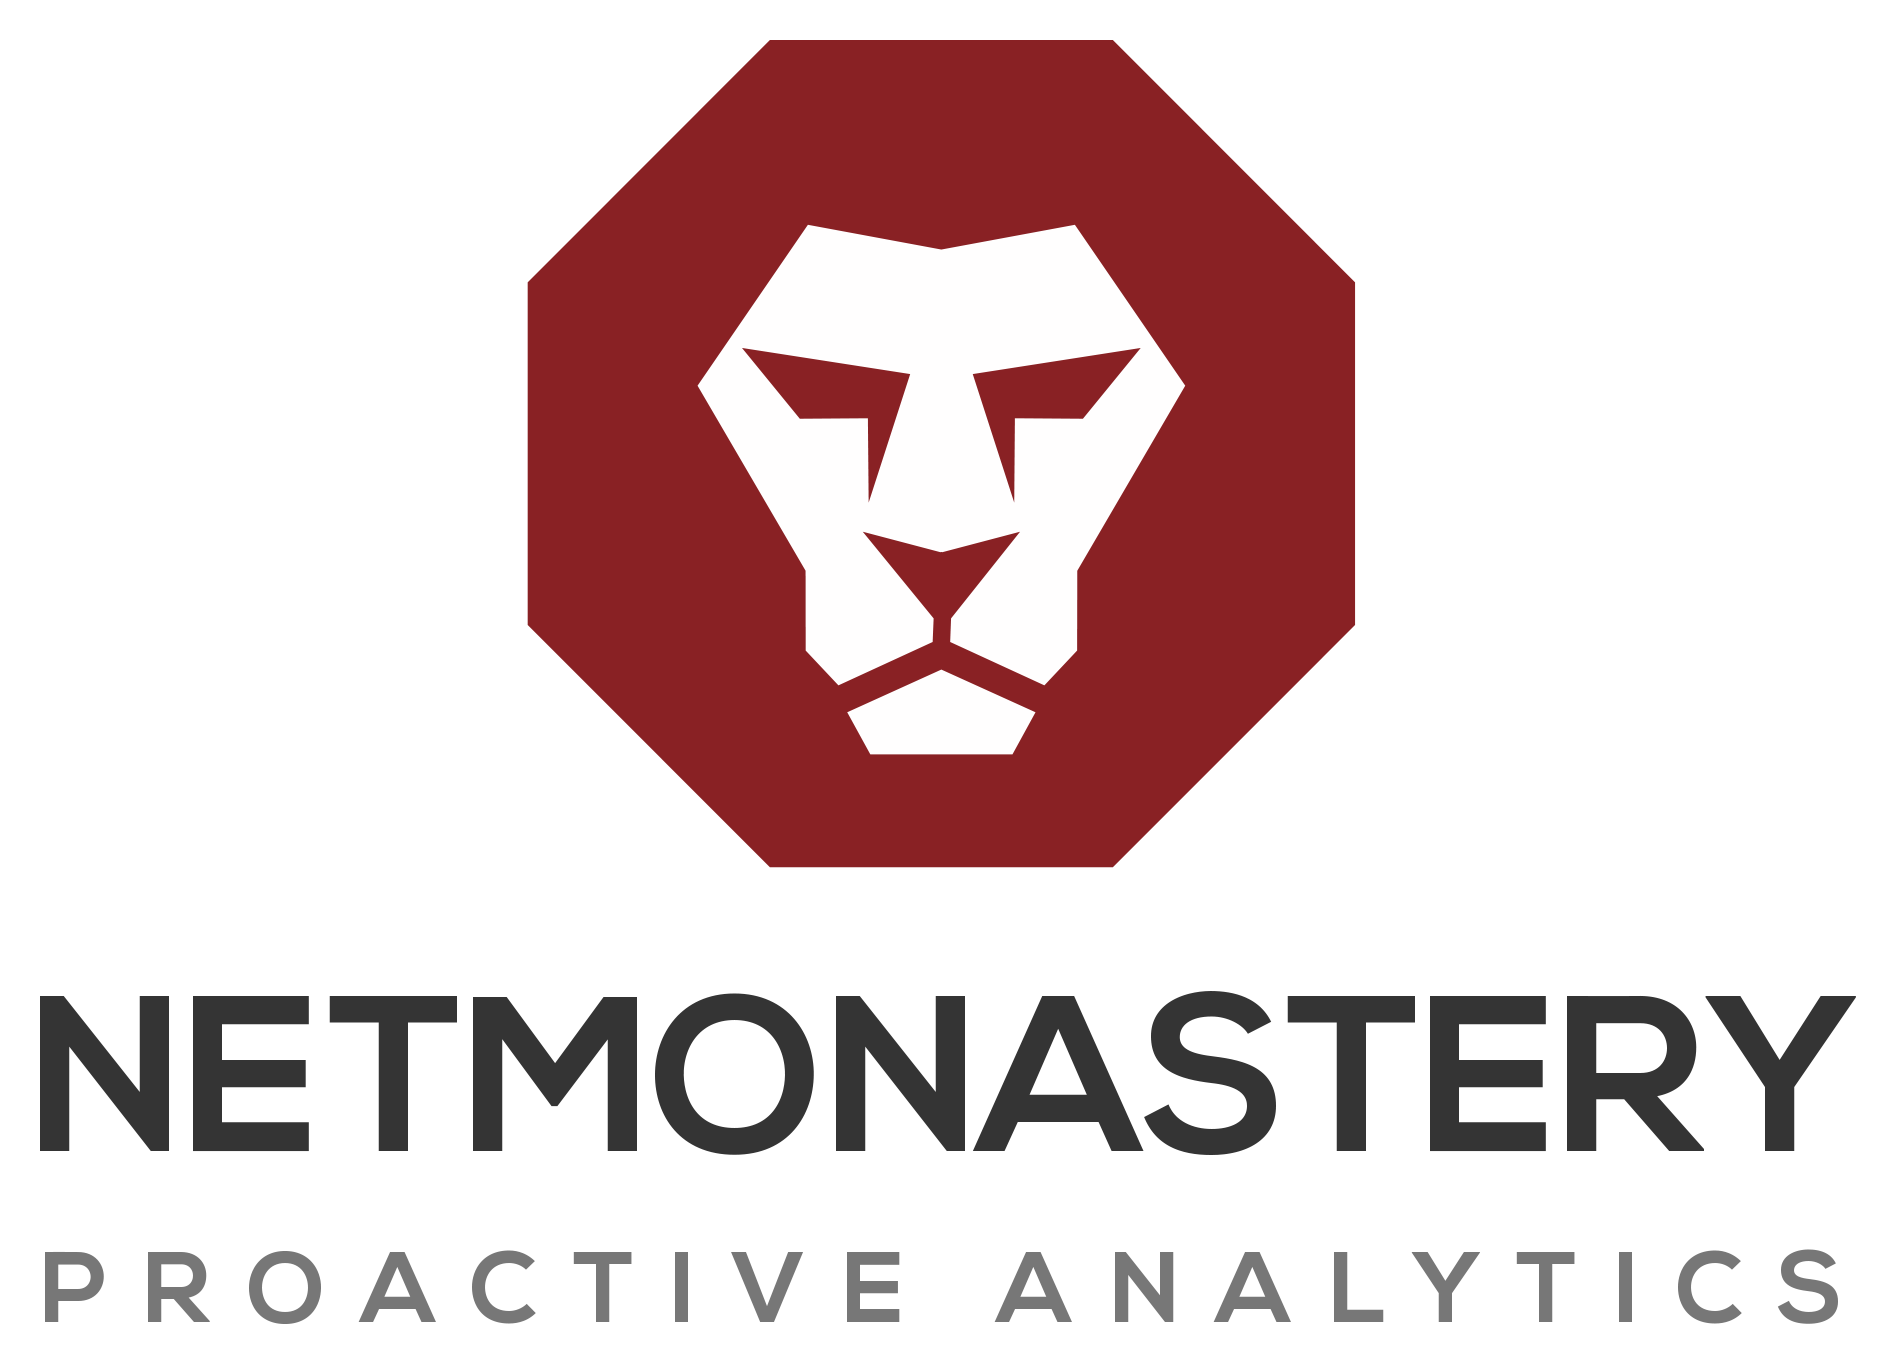 Netmonastery logo